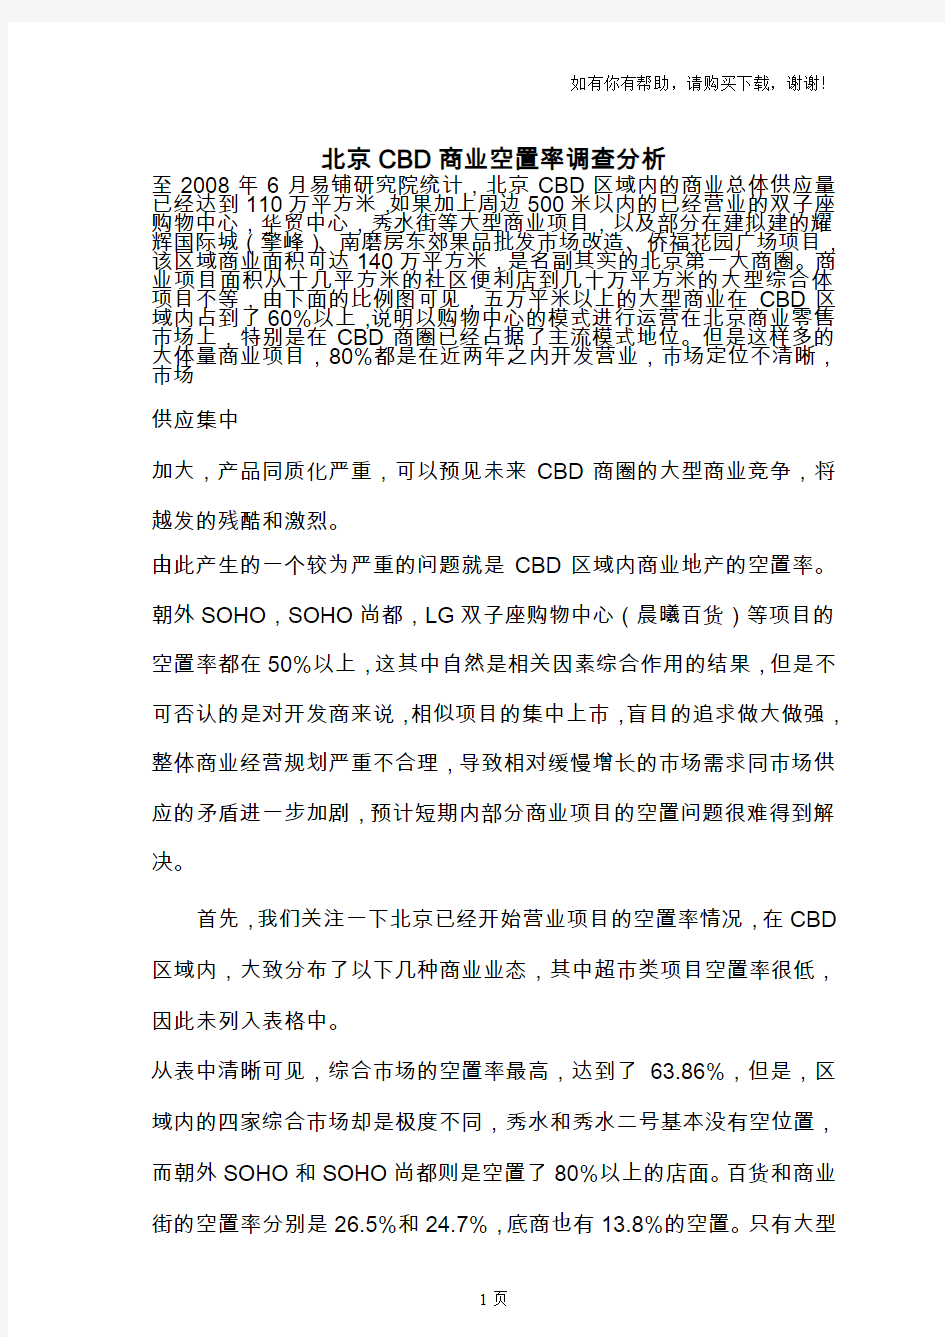 北京市CBD商业空置率调查分析报告